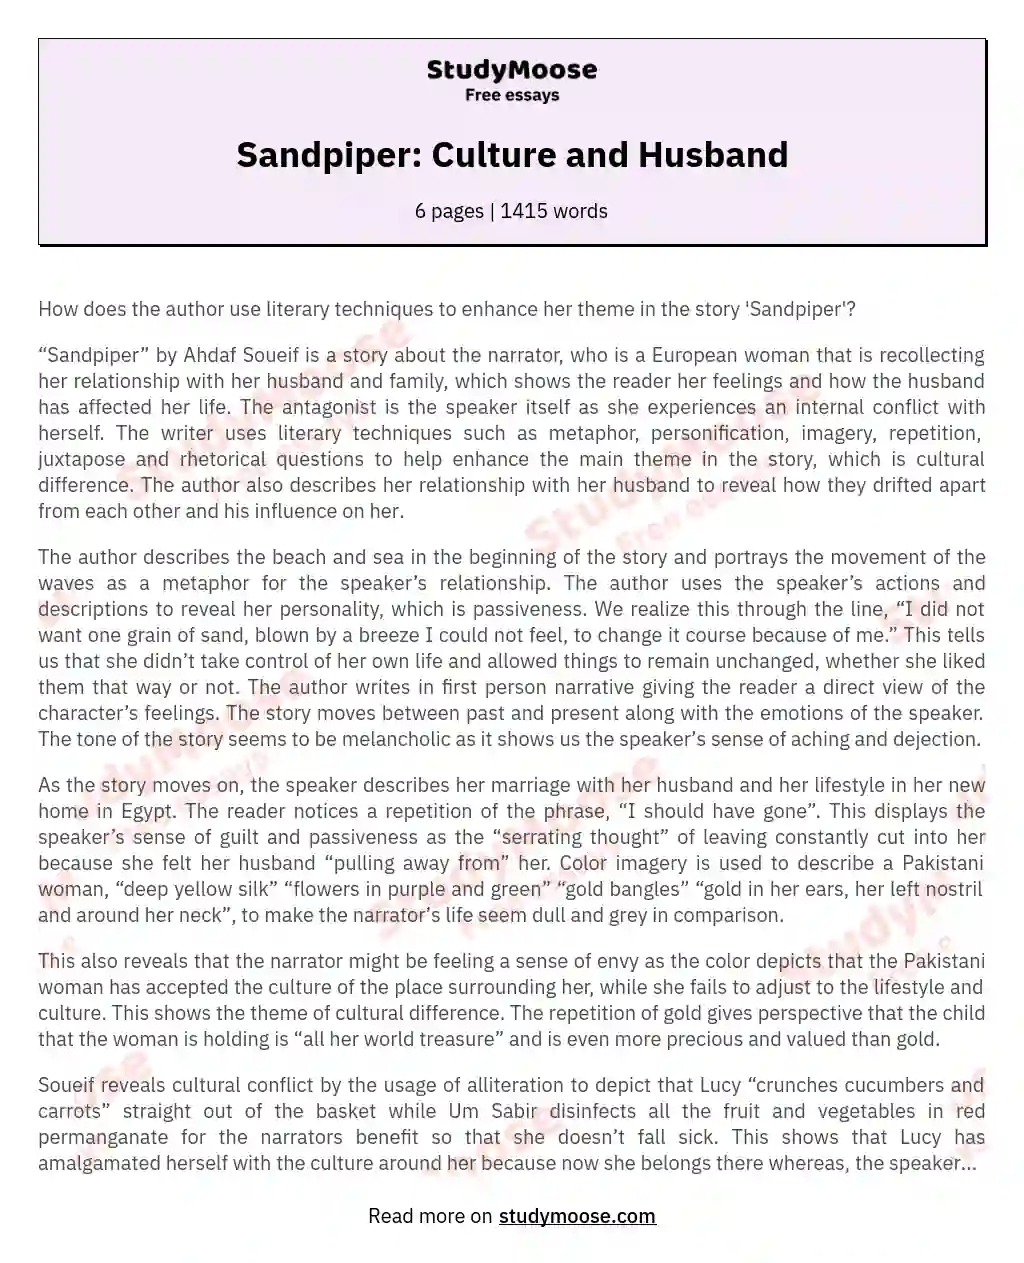 Sandpiper: Culture and Husband essay